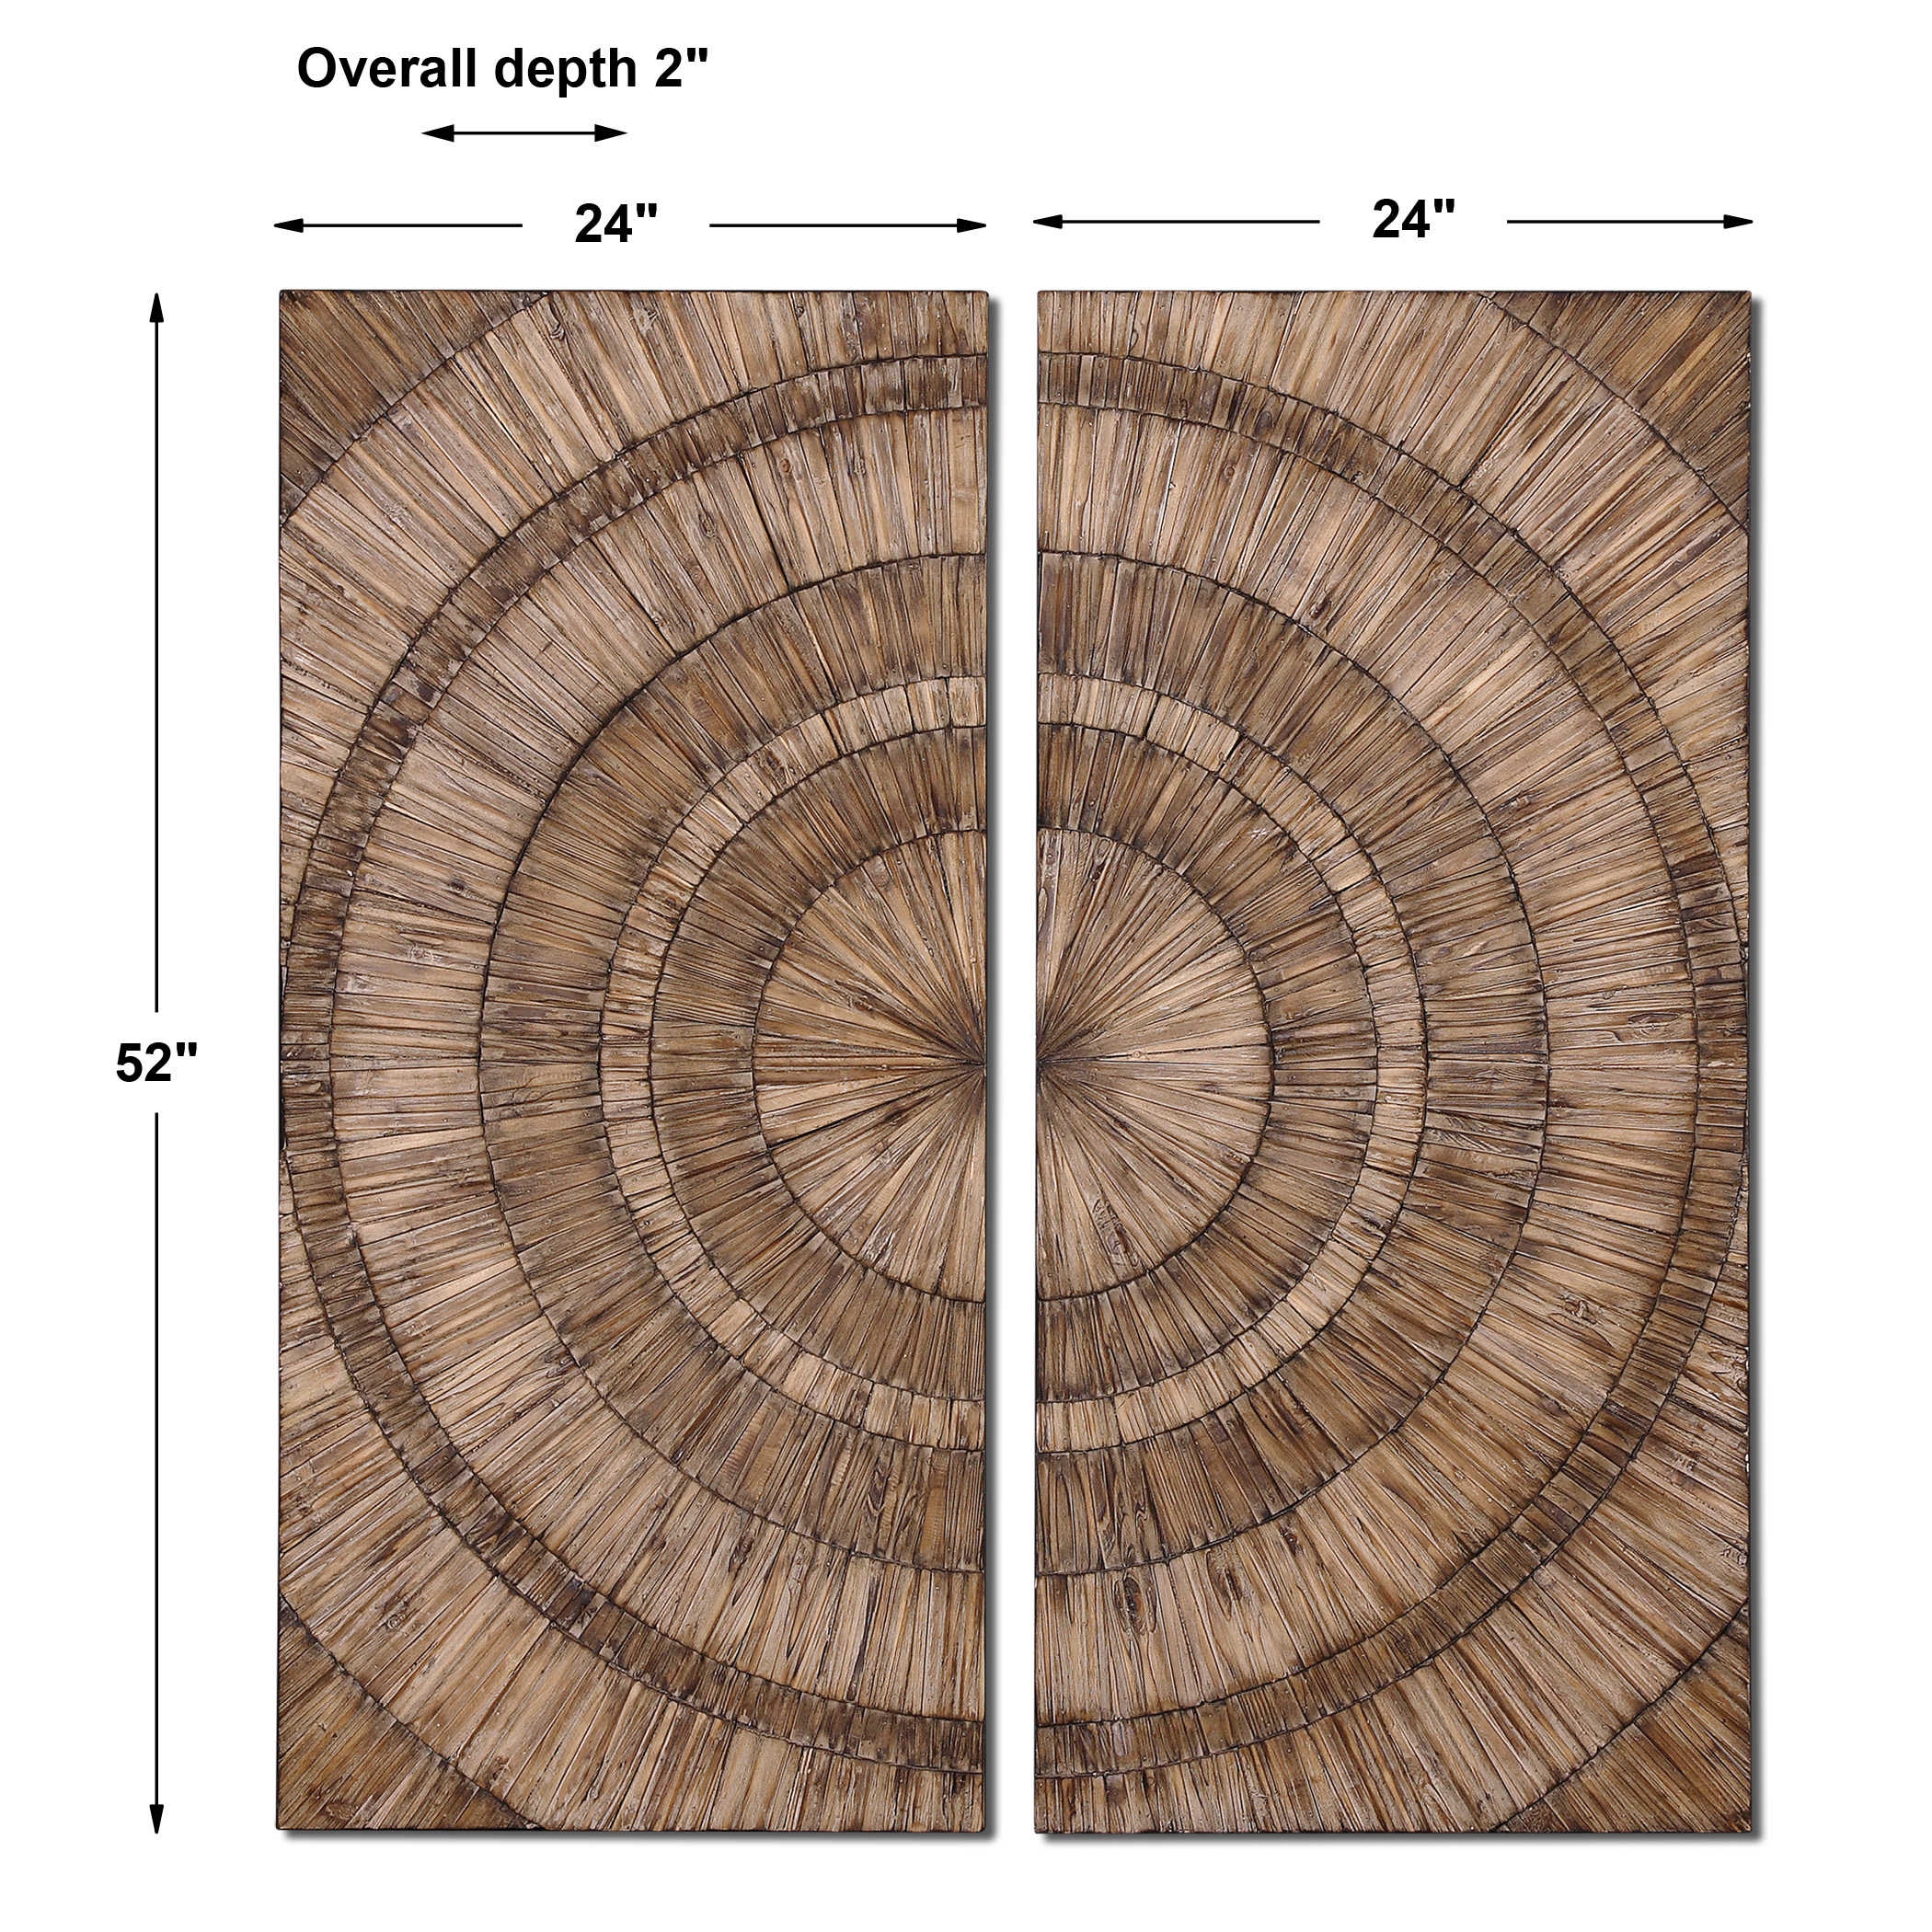 Lanciano Wood Wall Panels s/2 - Image 2